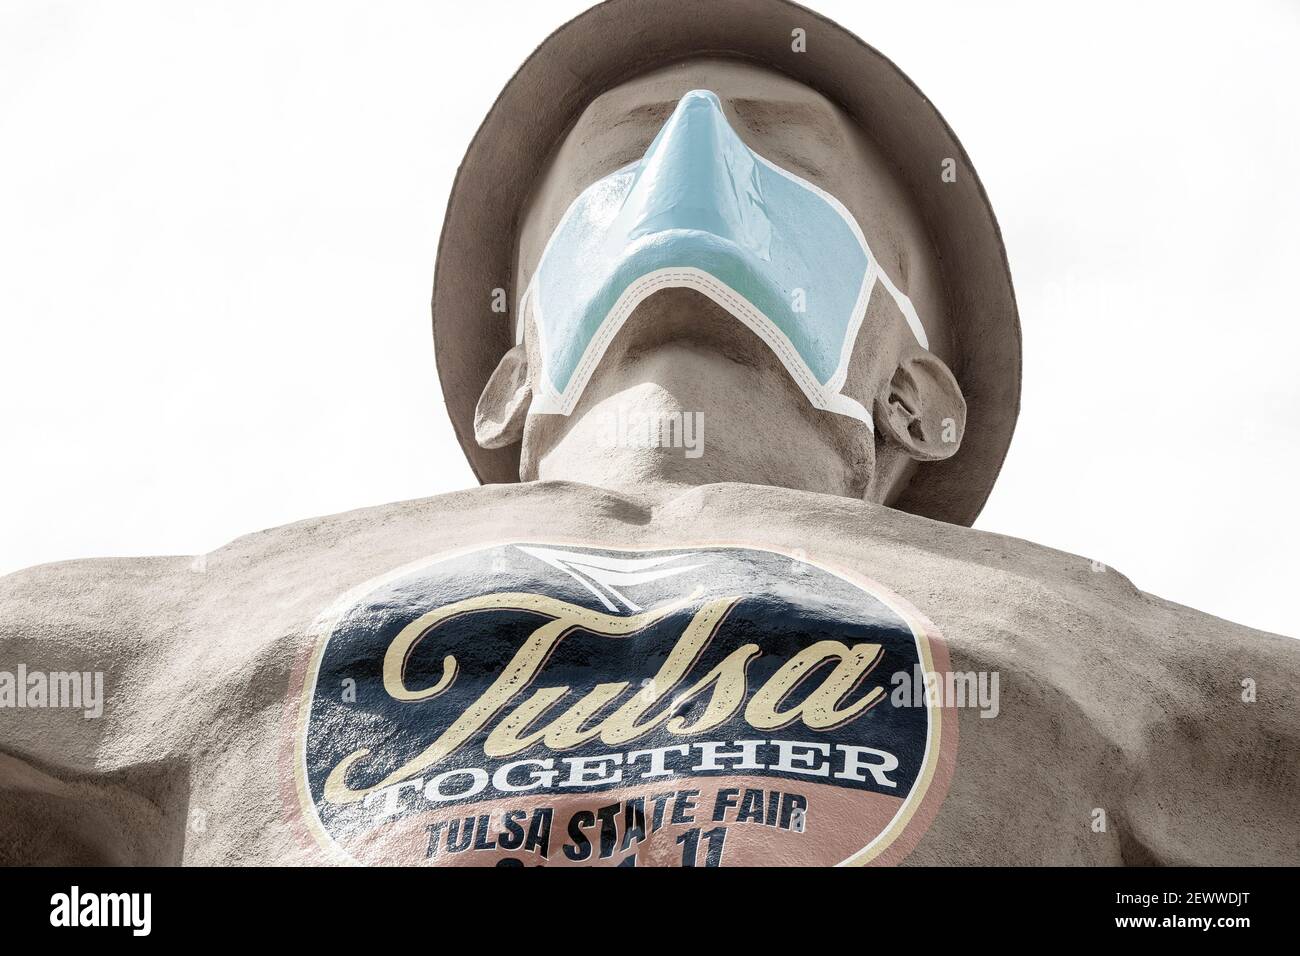 07 09 2020 Tulsa, États-Unis Iconic Golden Diller - statue géante d'un ouvrier de champs pétrolifères près de la route 66 en Oklahoma, portant un casque et un masque facial pendant la pande Banque D'Images